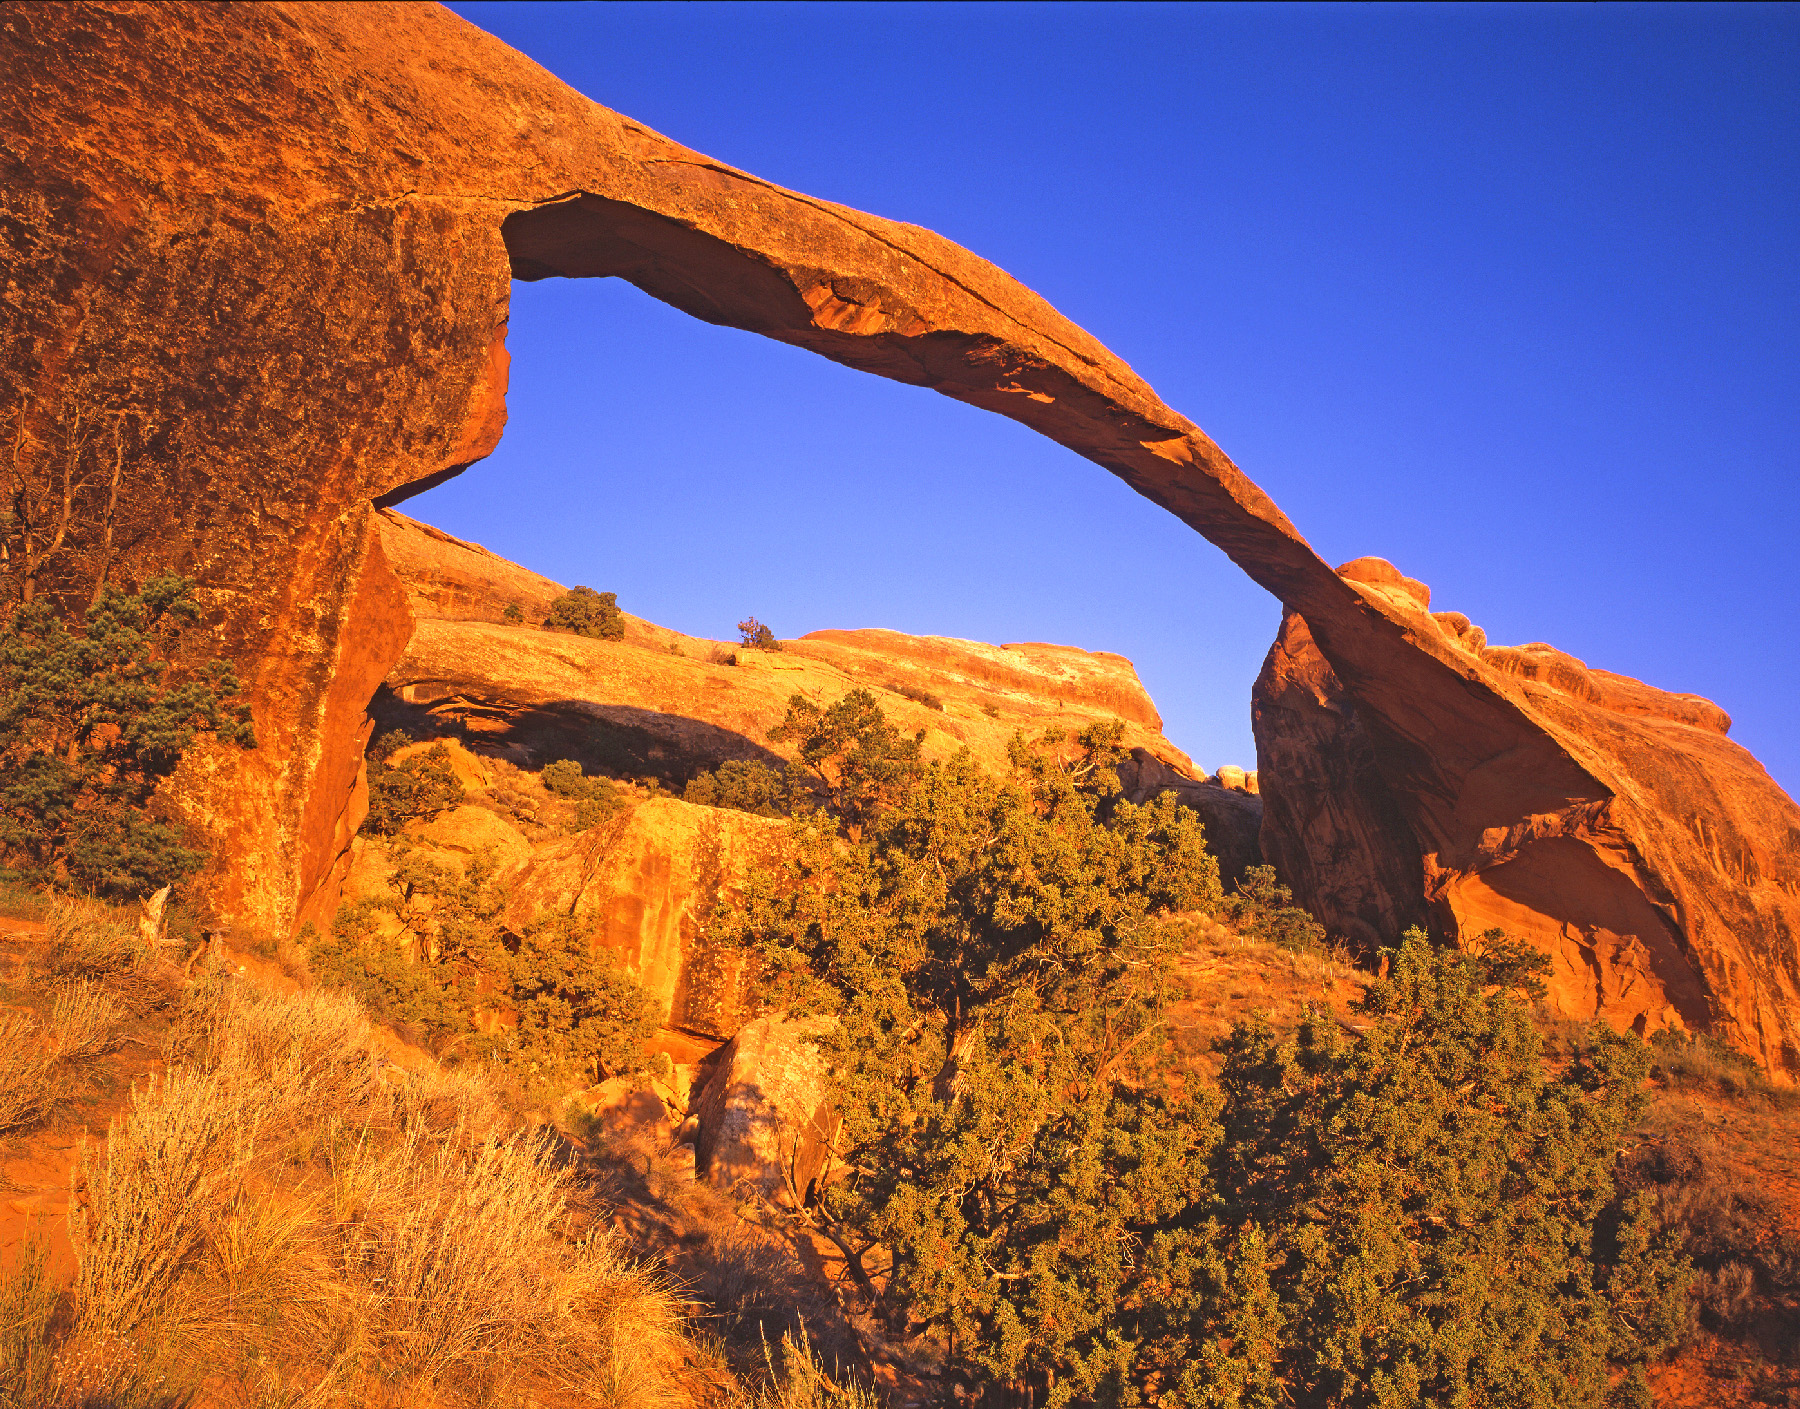 Vòm cảnh quan (Arch) tại Công viên quốc gia Arches chỉ là một trong số những kỳ quan thiên nhiên trong năm công viên quốc gia của tiểu bang Utah. (Ảnh: Đăng dưới sự cho phép của anh Tom Till.)